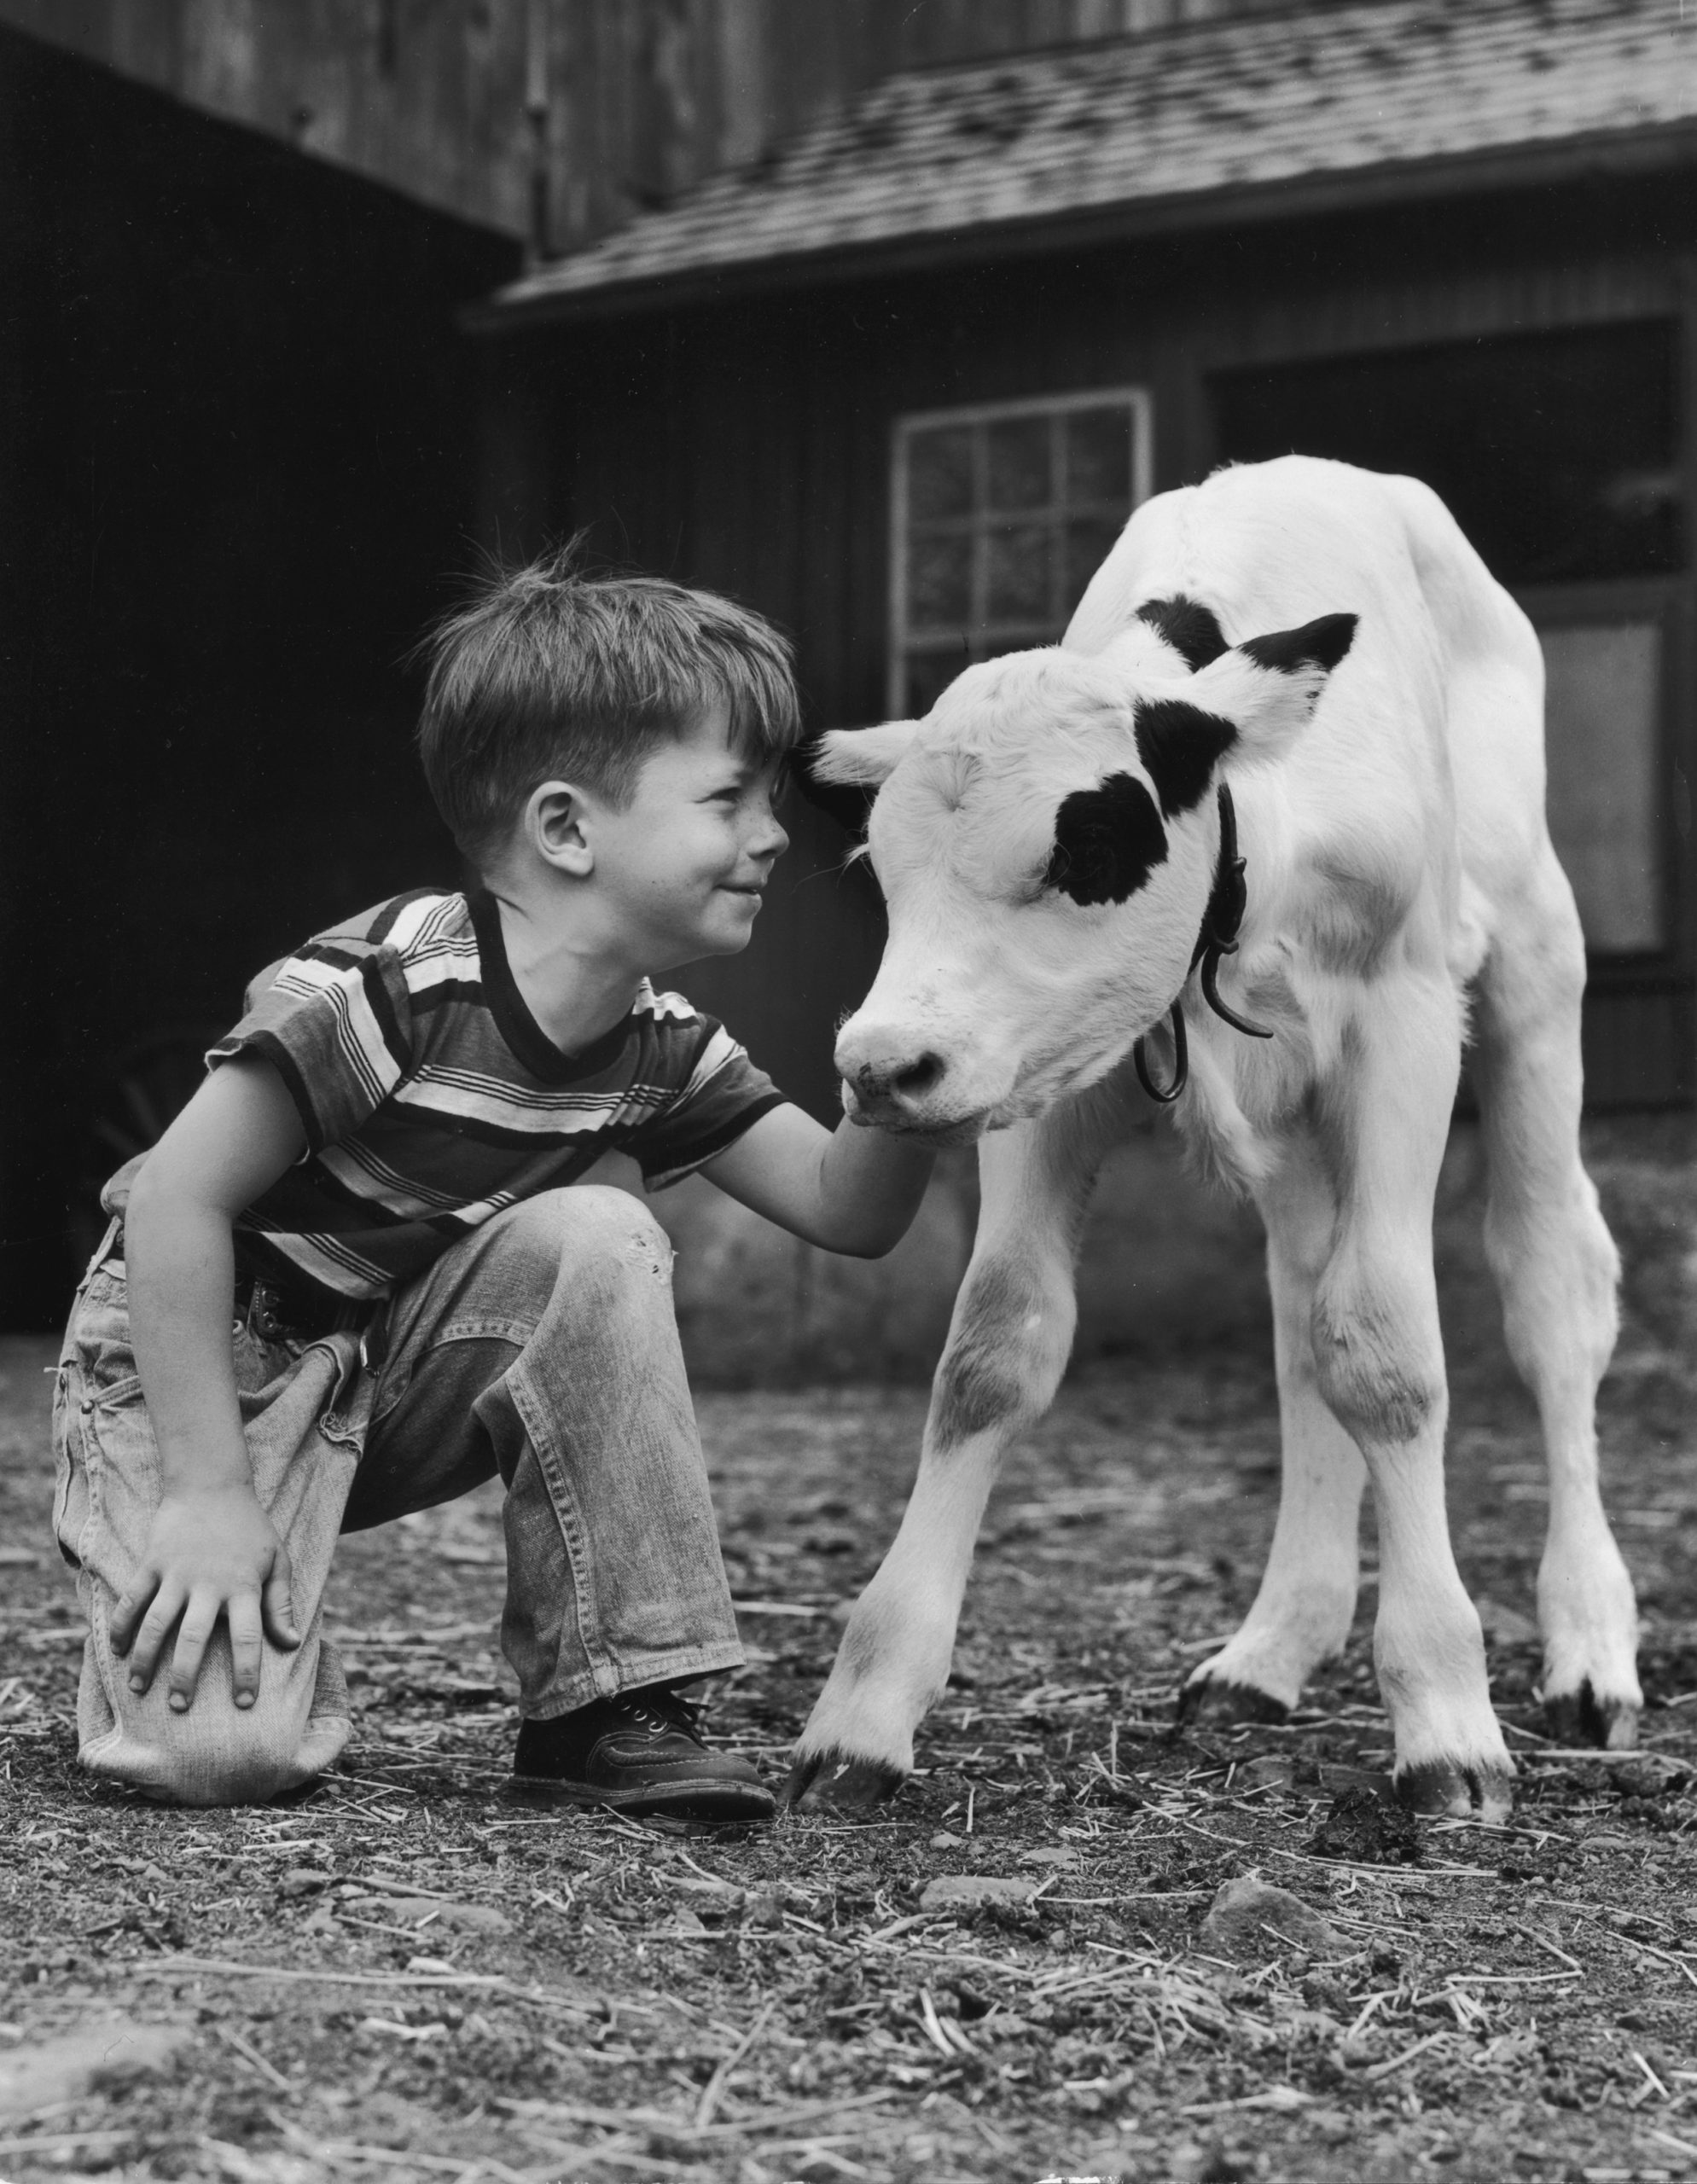 1945 körül egy kisfiú az istállóban egy fehér borjút simogat